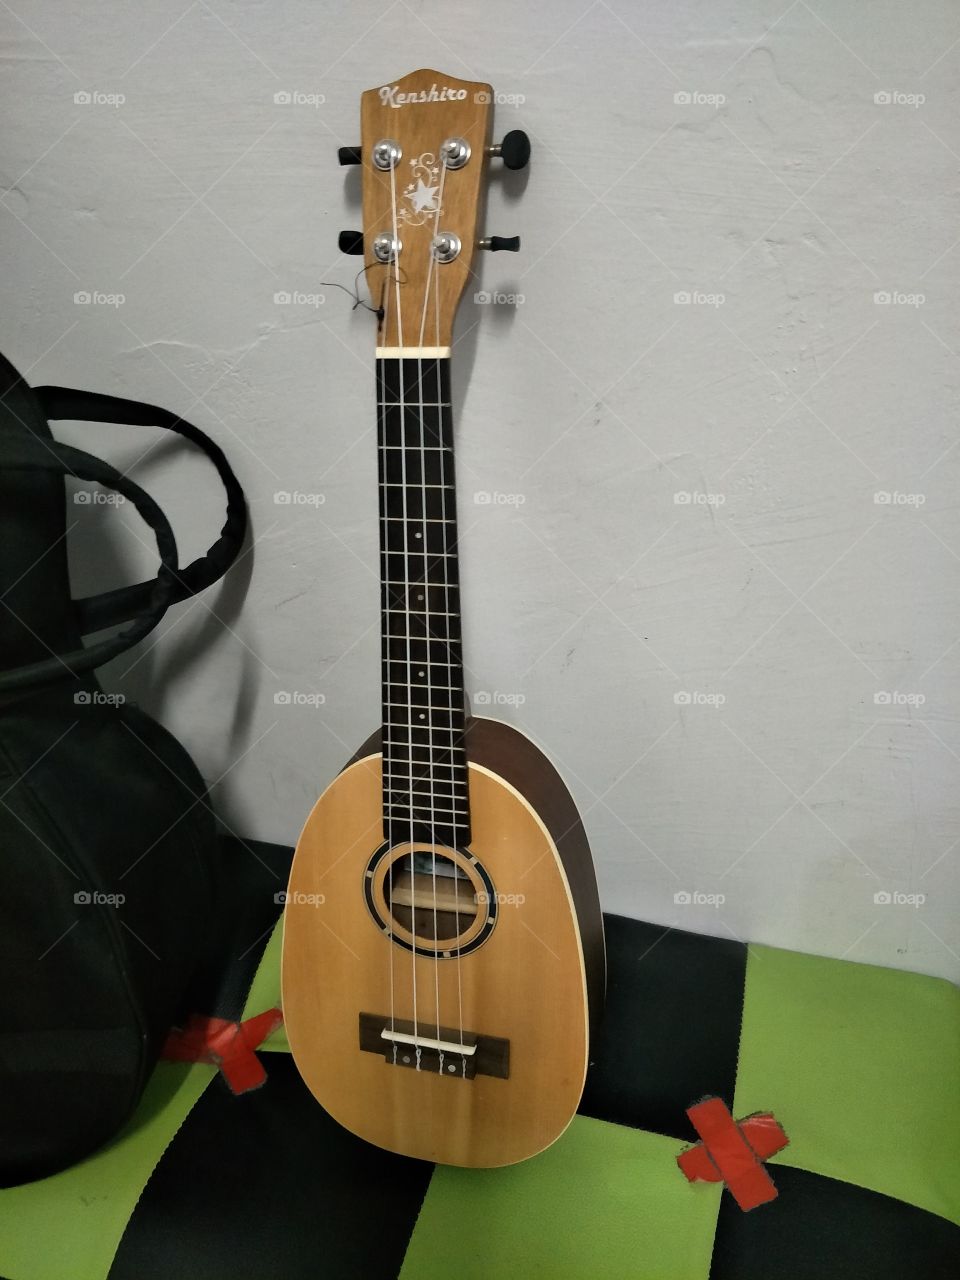 My ukulele